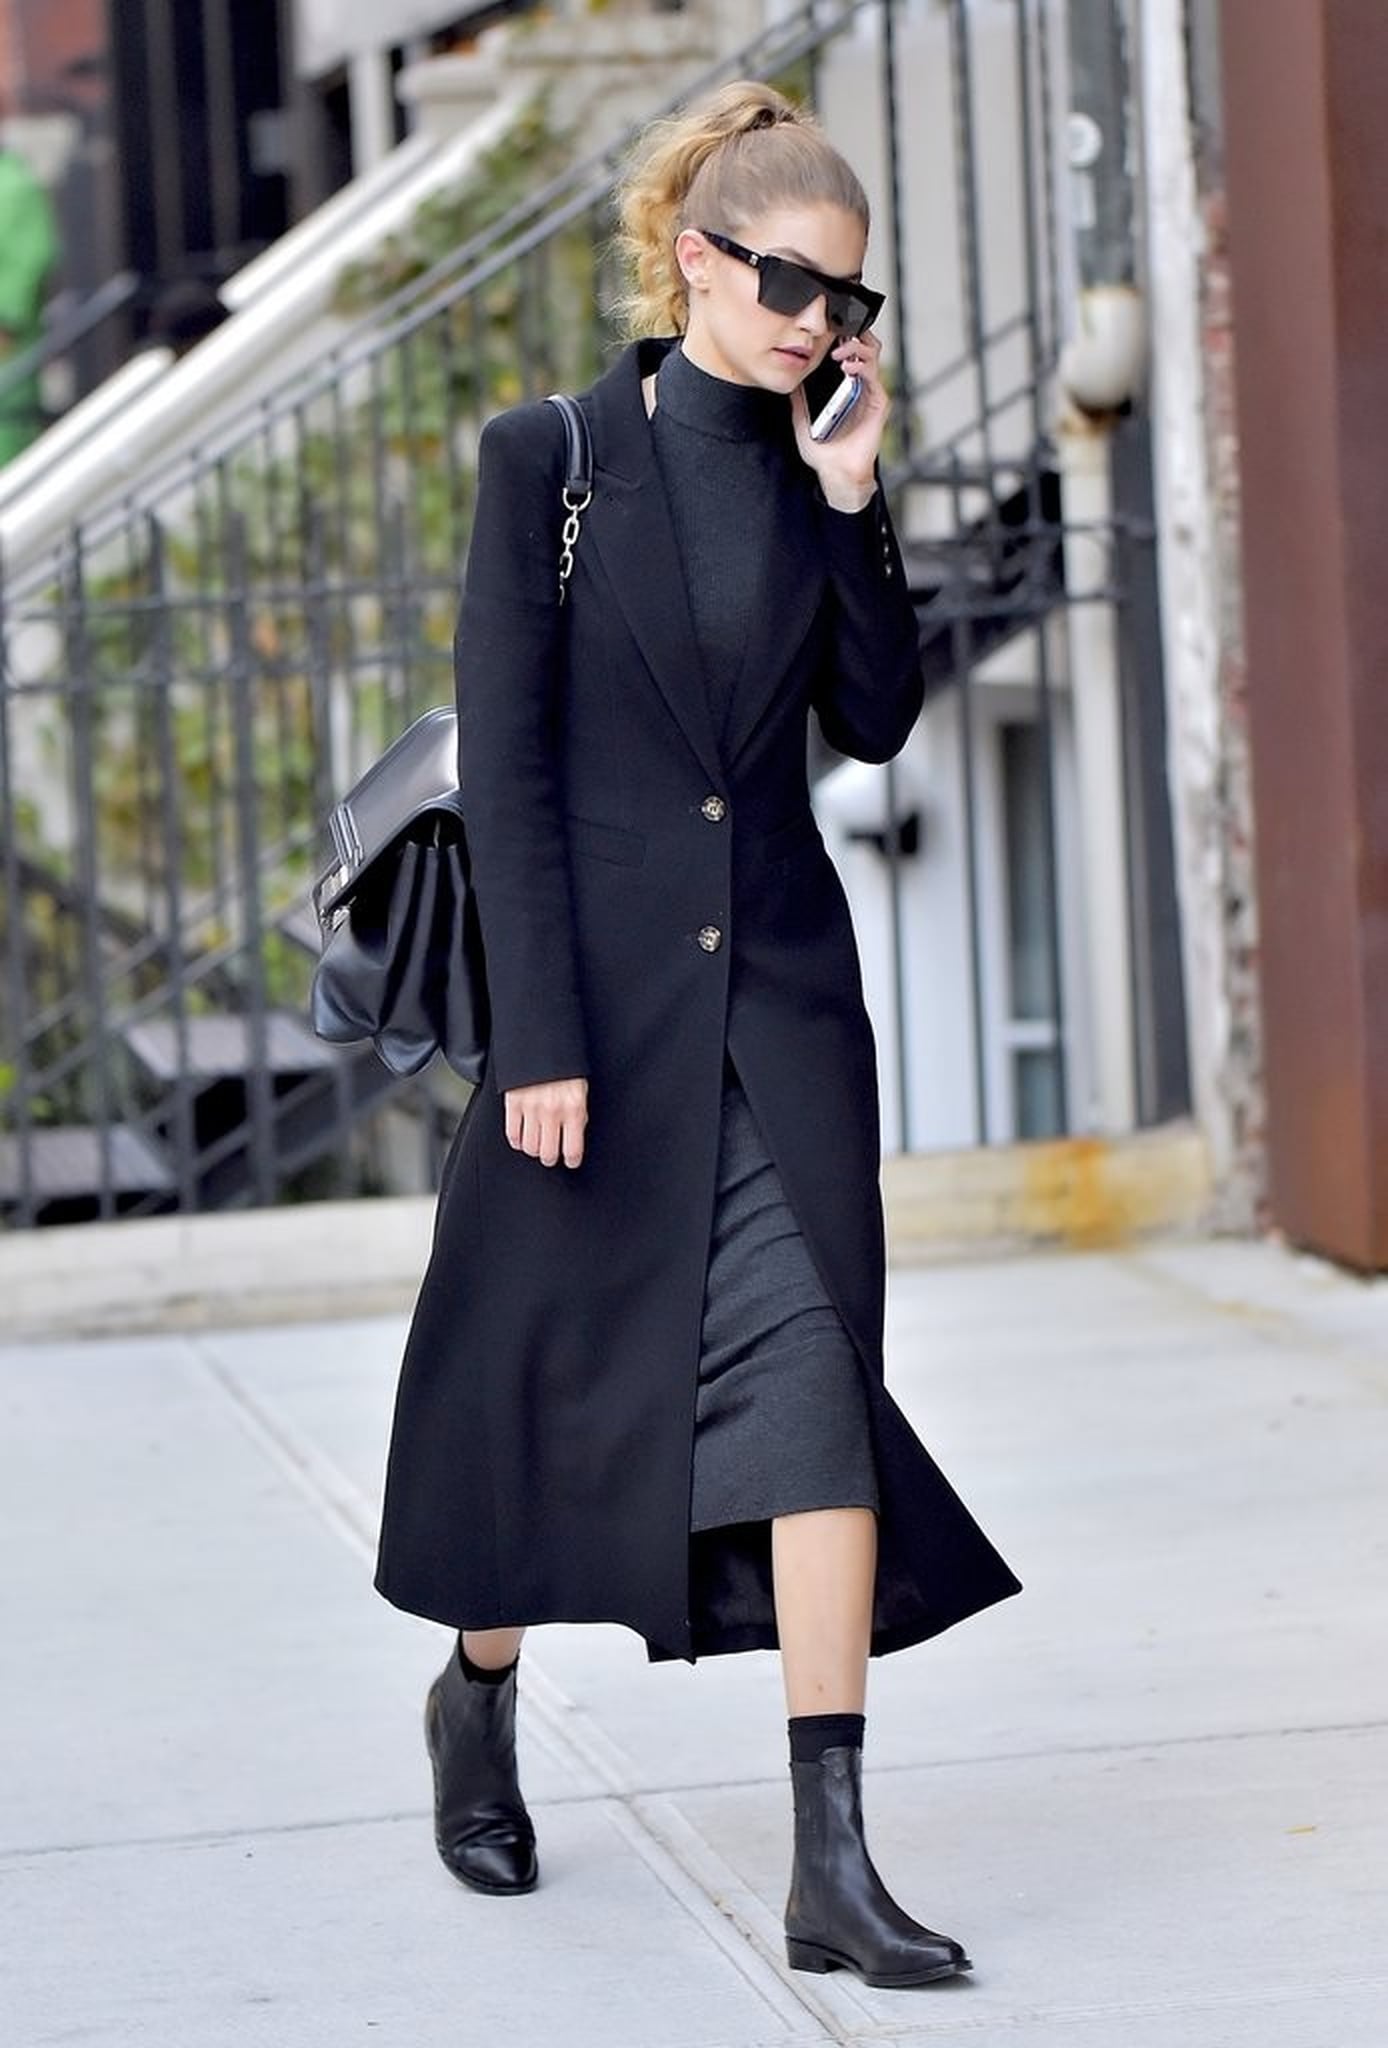 Gigi Hadid's Fall Outfits | POPSUGAR Fashion